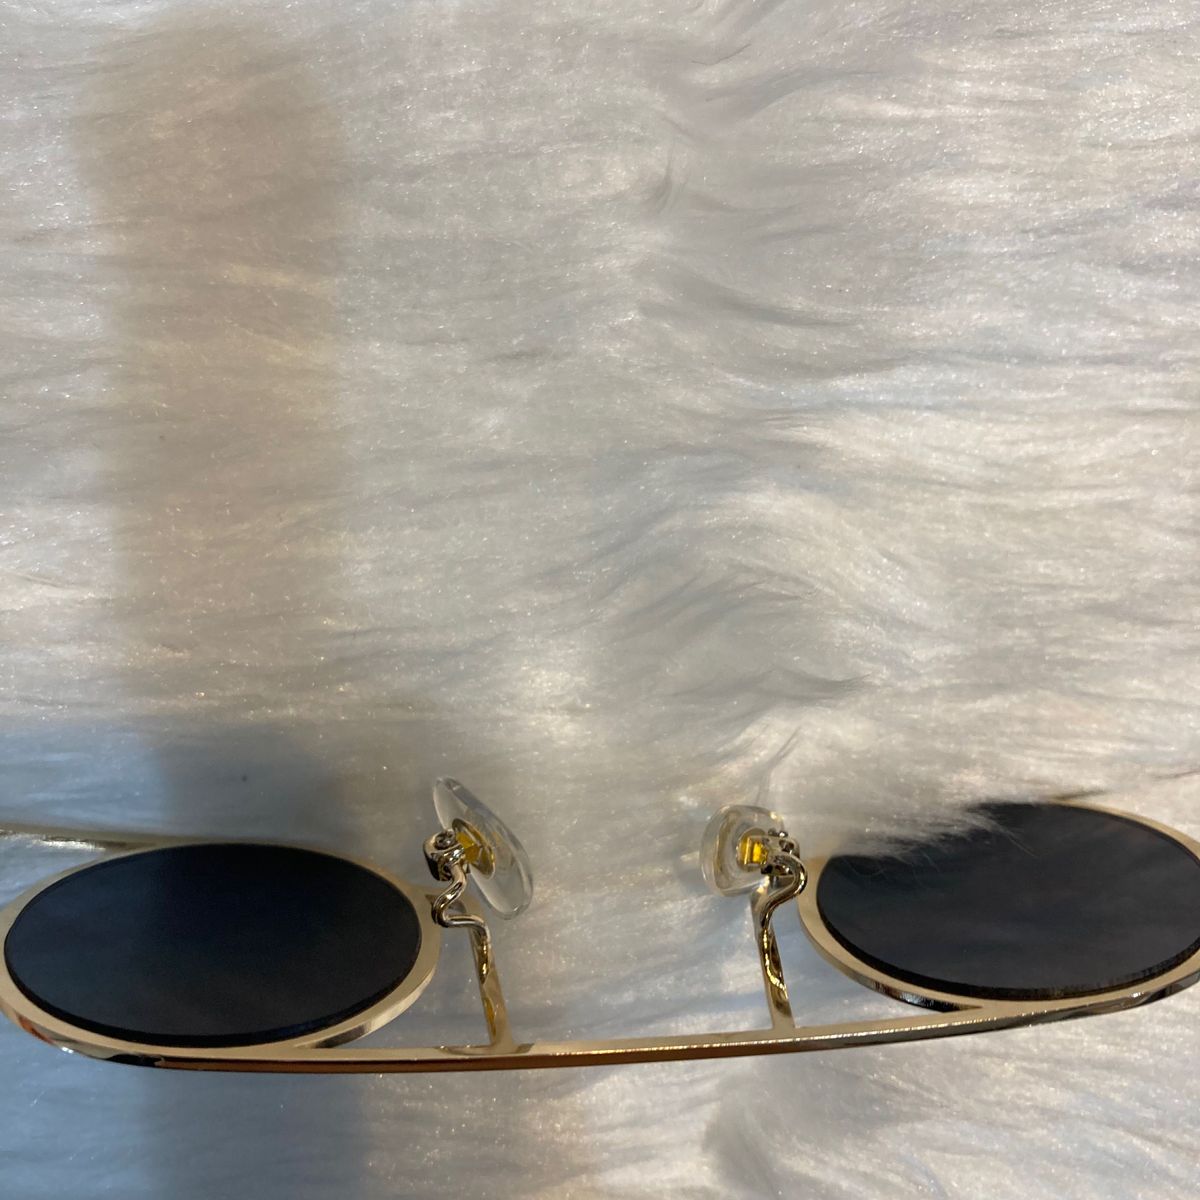 61丸メガネ眼鏡サングラス黒ブラック金ゴールドレトロ個性的めがねラウンド ヴィンテージ ミリタリー風